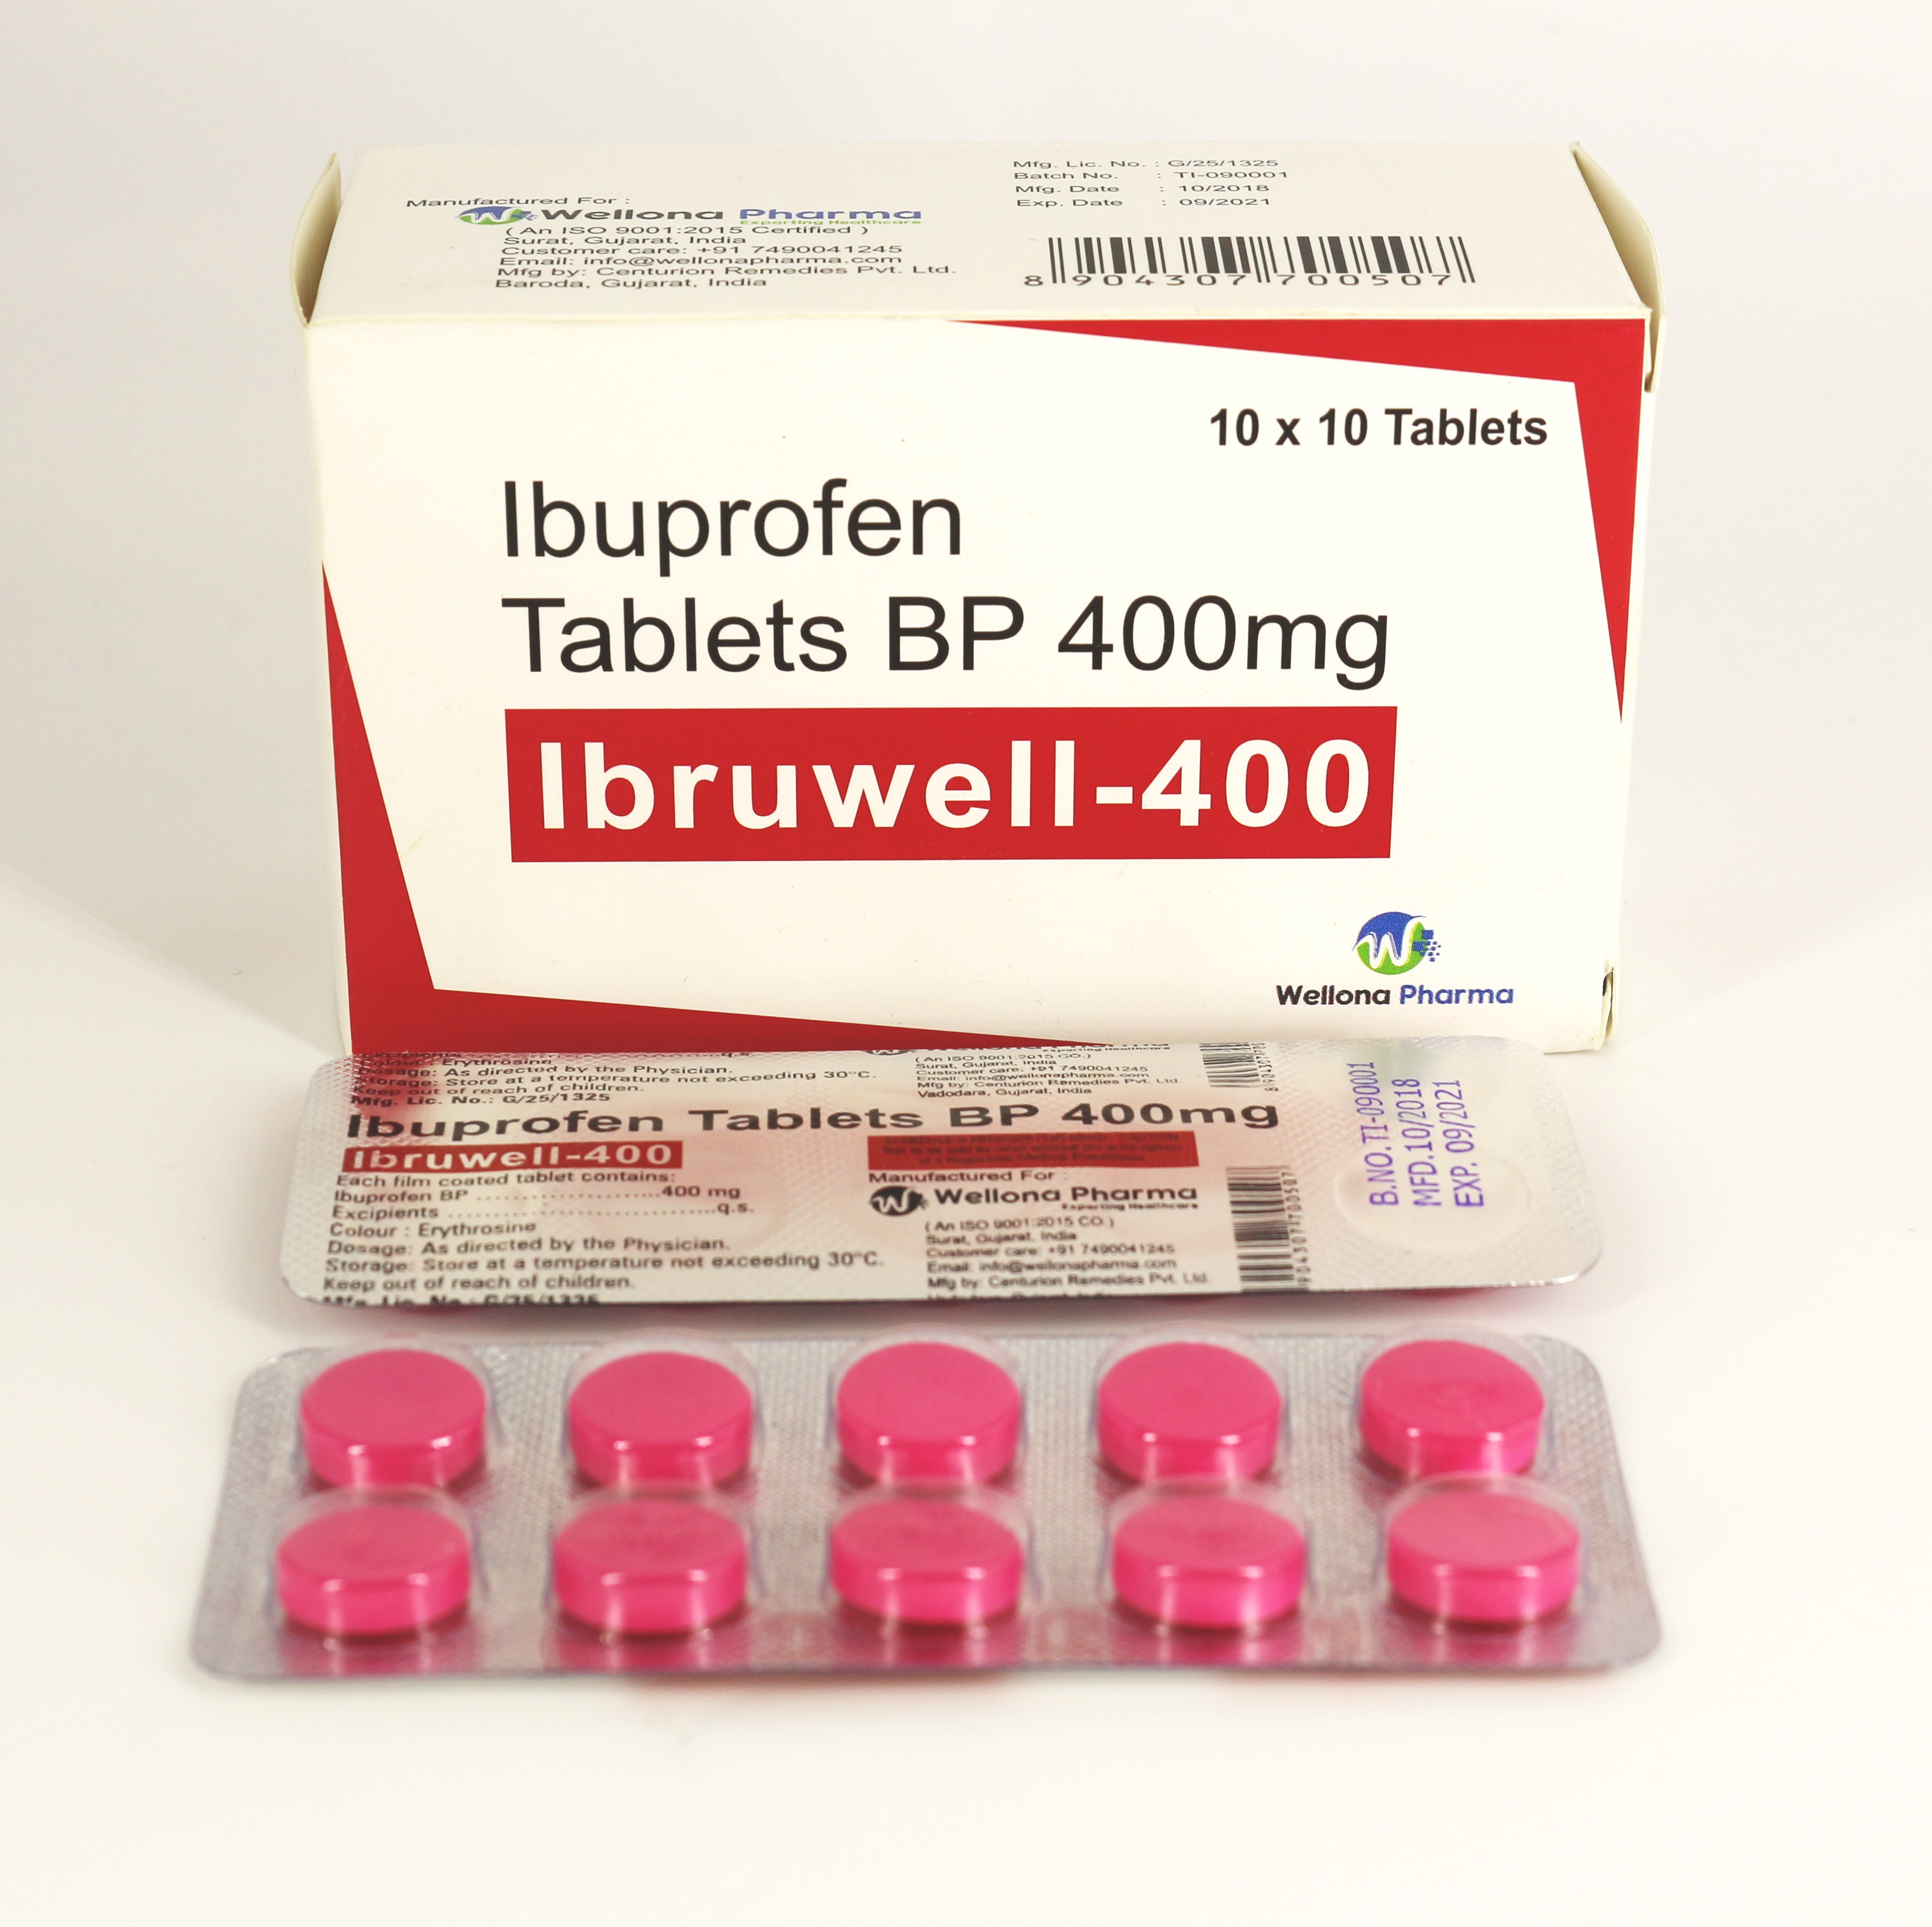 Ибупрофен лучший производитель. Ibuprofen 400 MG Tablets. Ибупрофен 400 Индия. Ибупрофен таблетки производители 400 мг. Ибупрофен производитель.